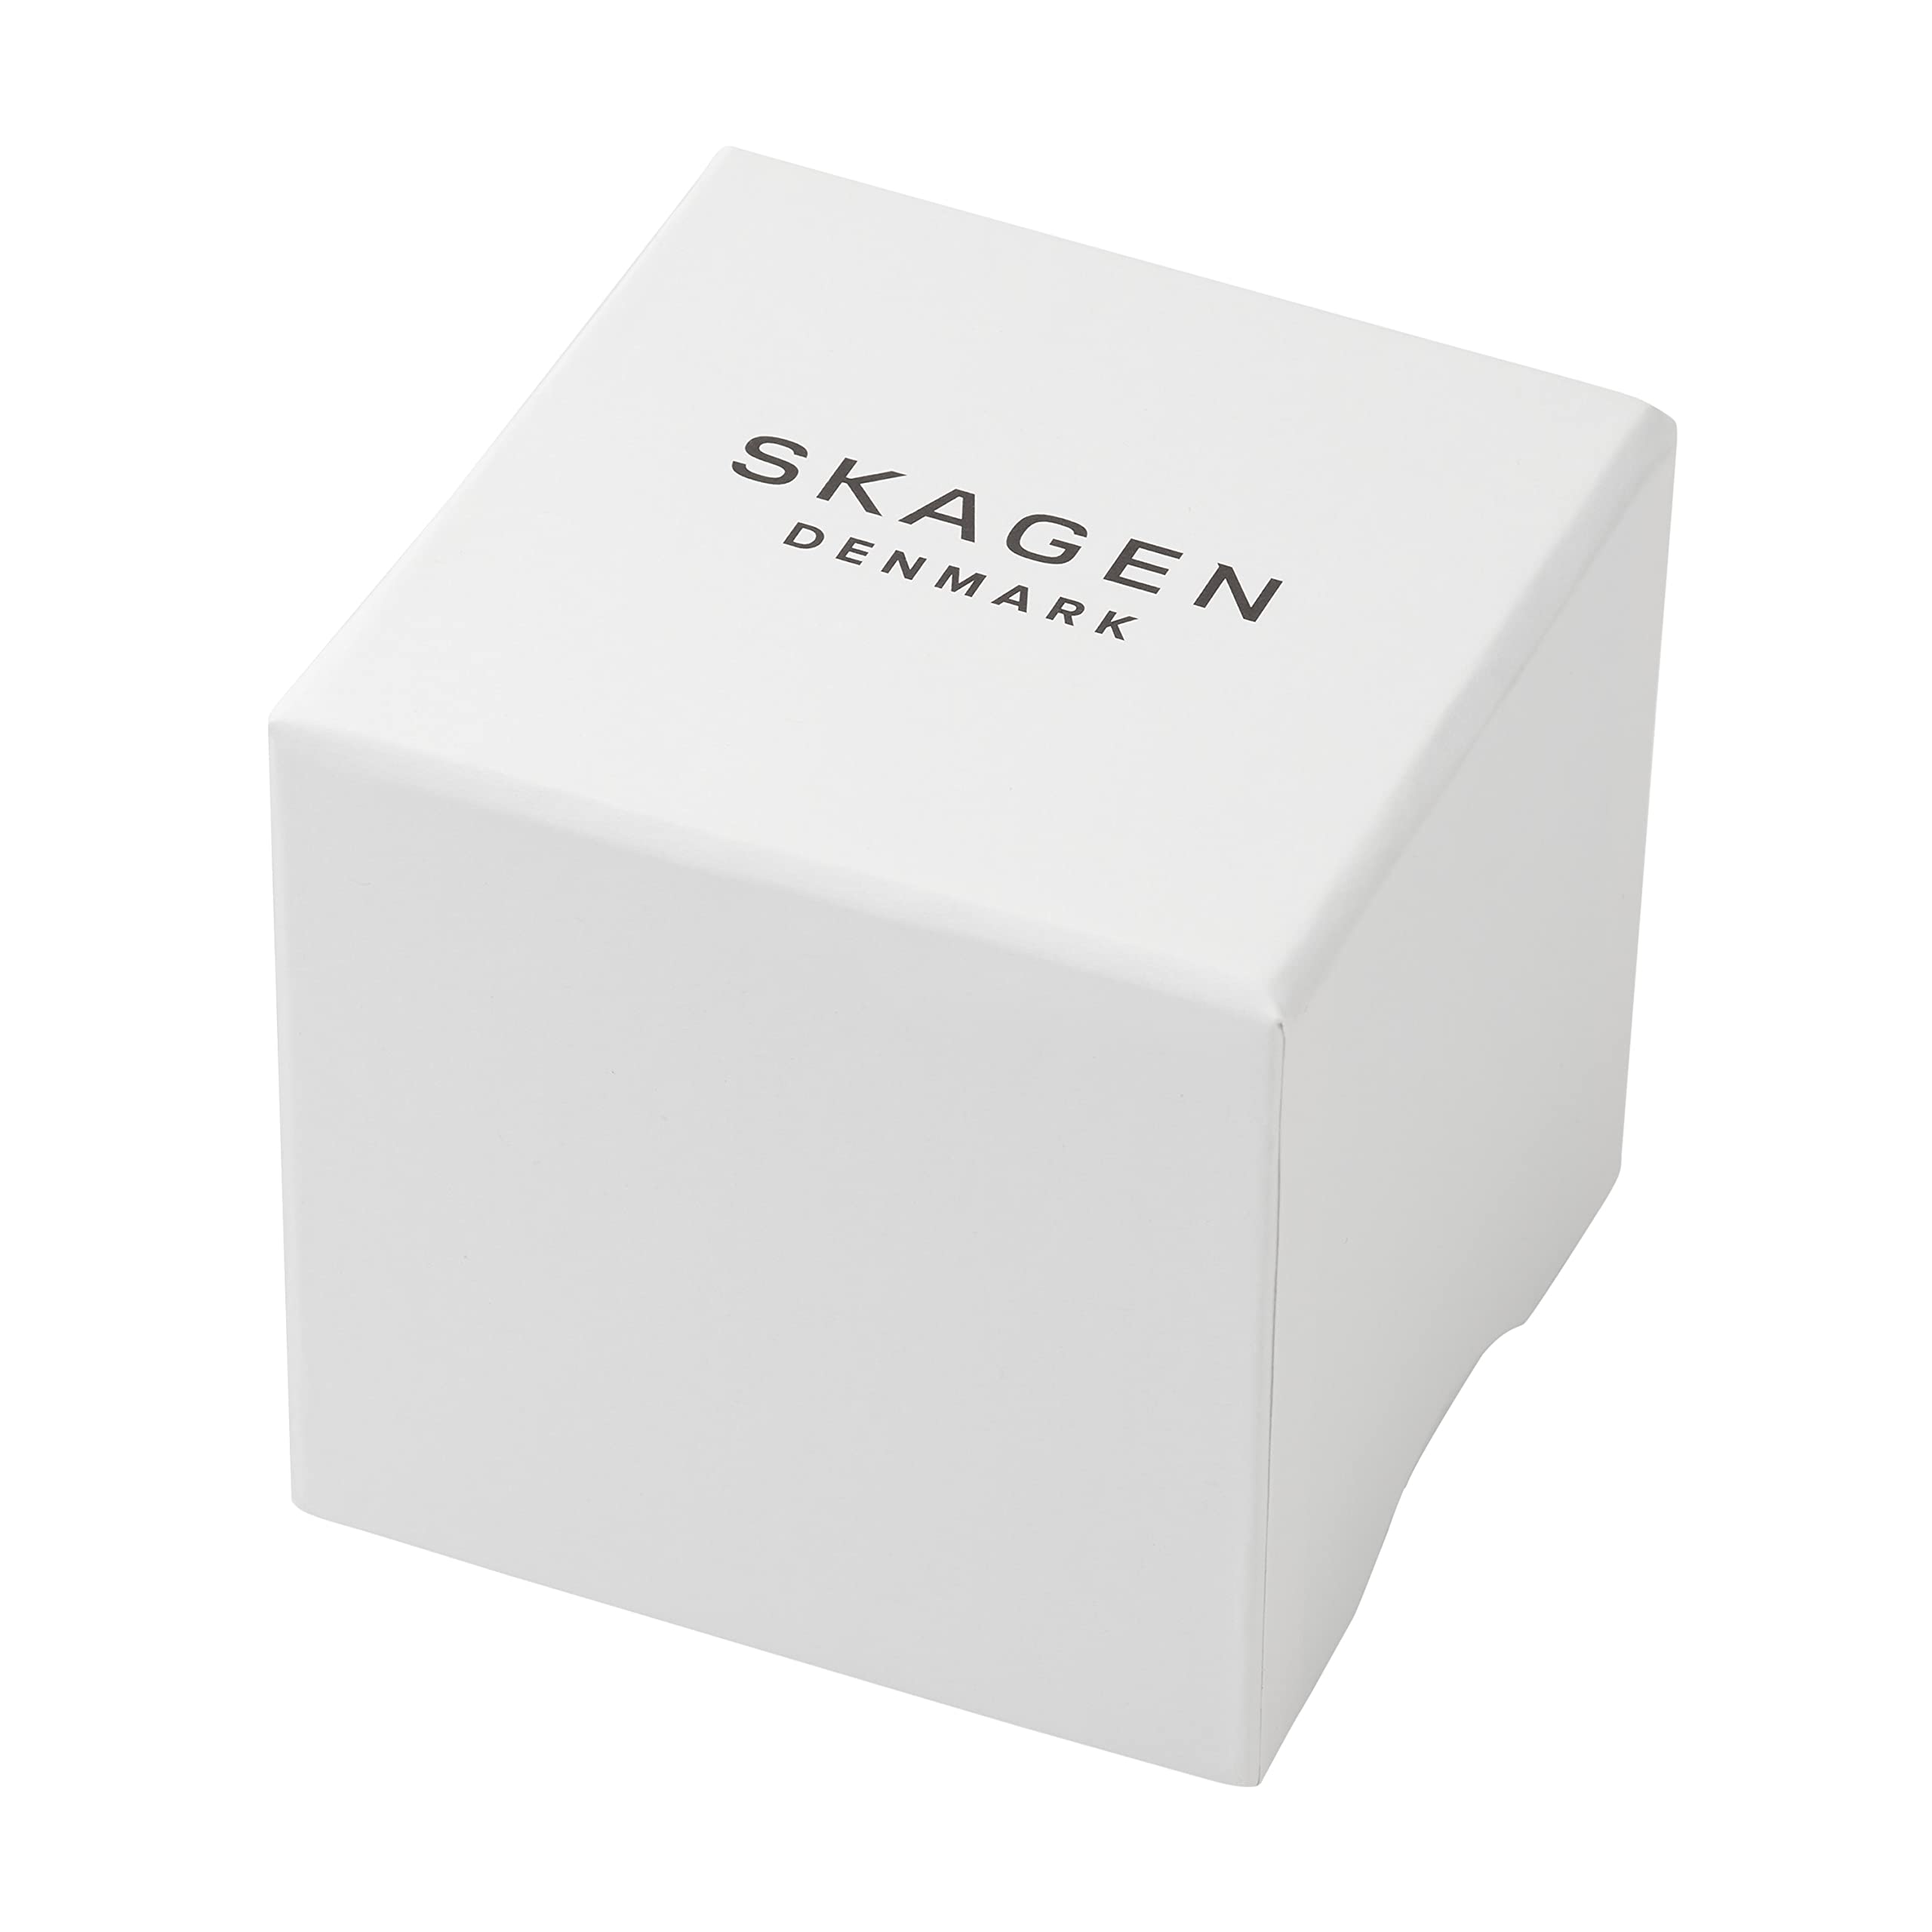 Skagen Signatur Three-Hand 40mm Minimalist Watch